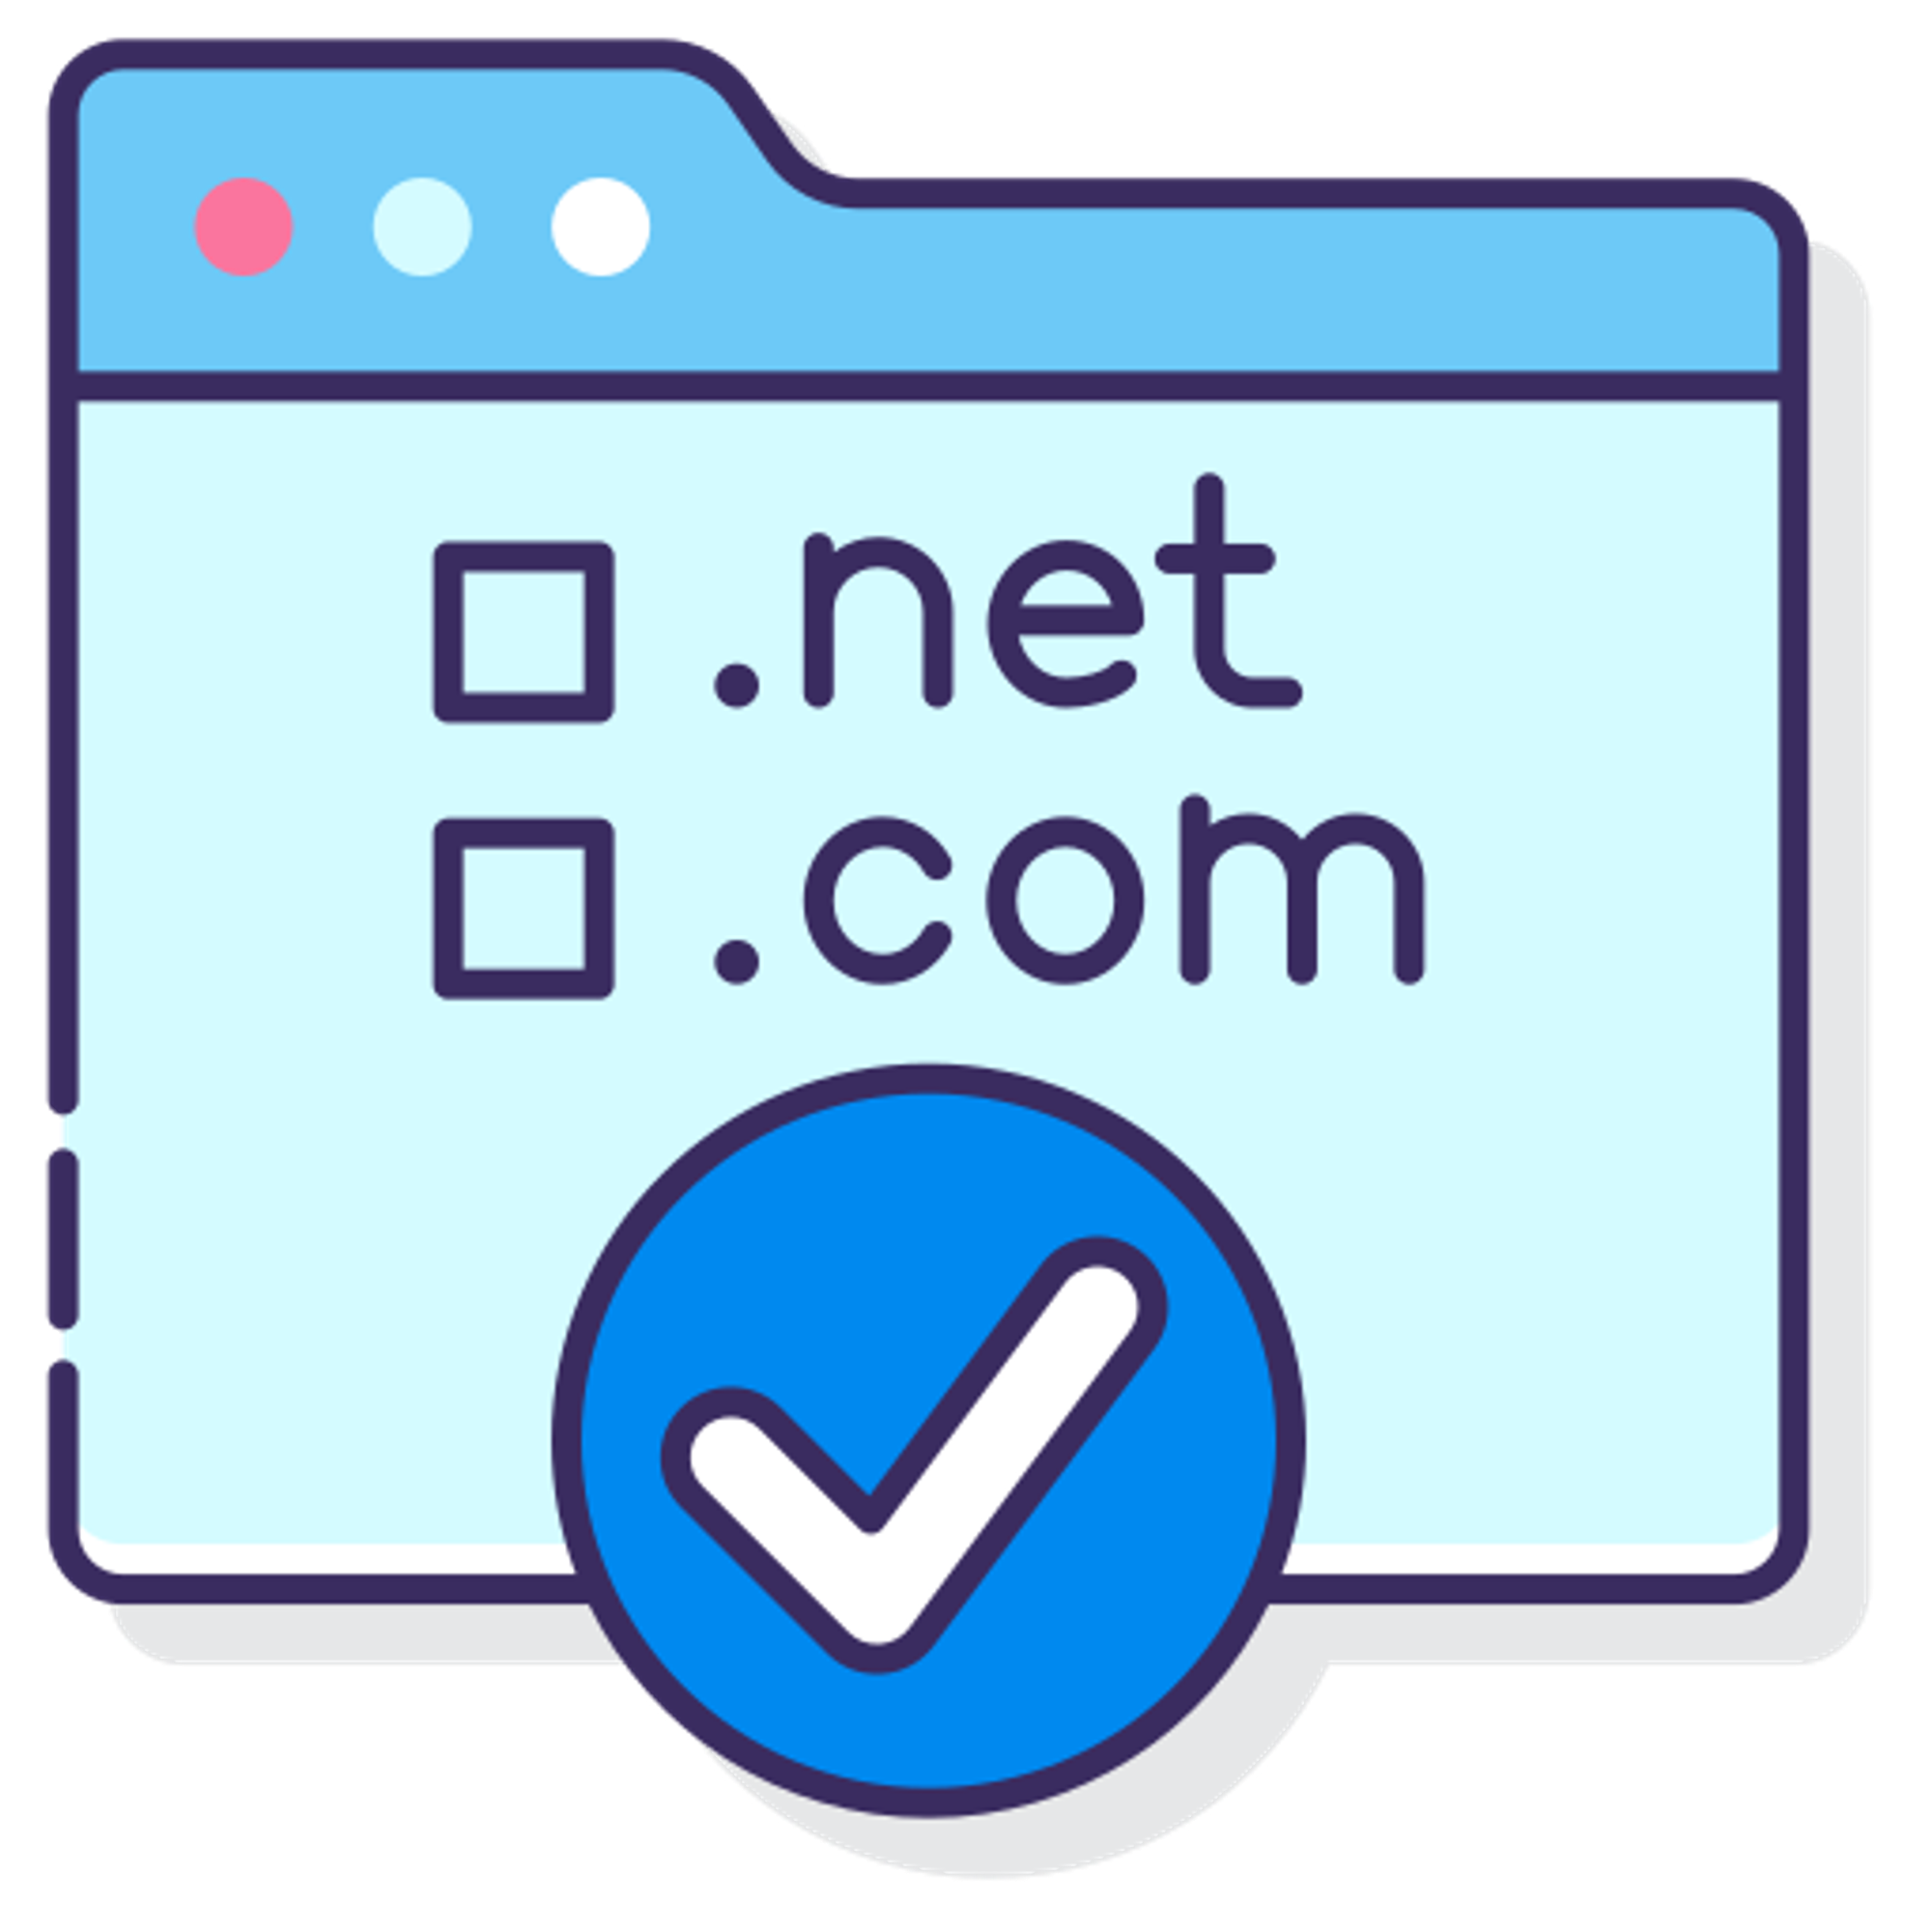 SOC nhận đăng ký tên miền với giá thành cạnh tranh, hỗ trợ giúp khách hàng dễ dàng tìm thấy thương hiệu của bạn trên Internet.